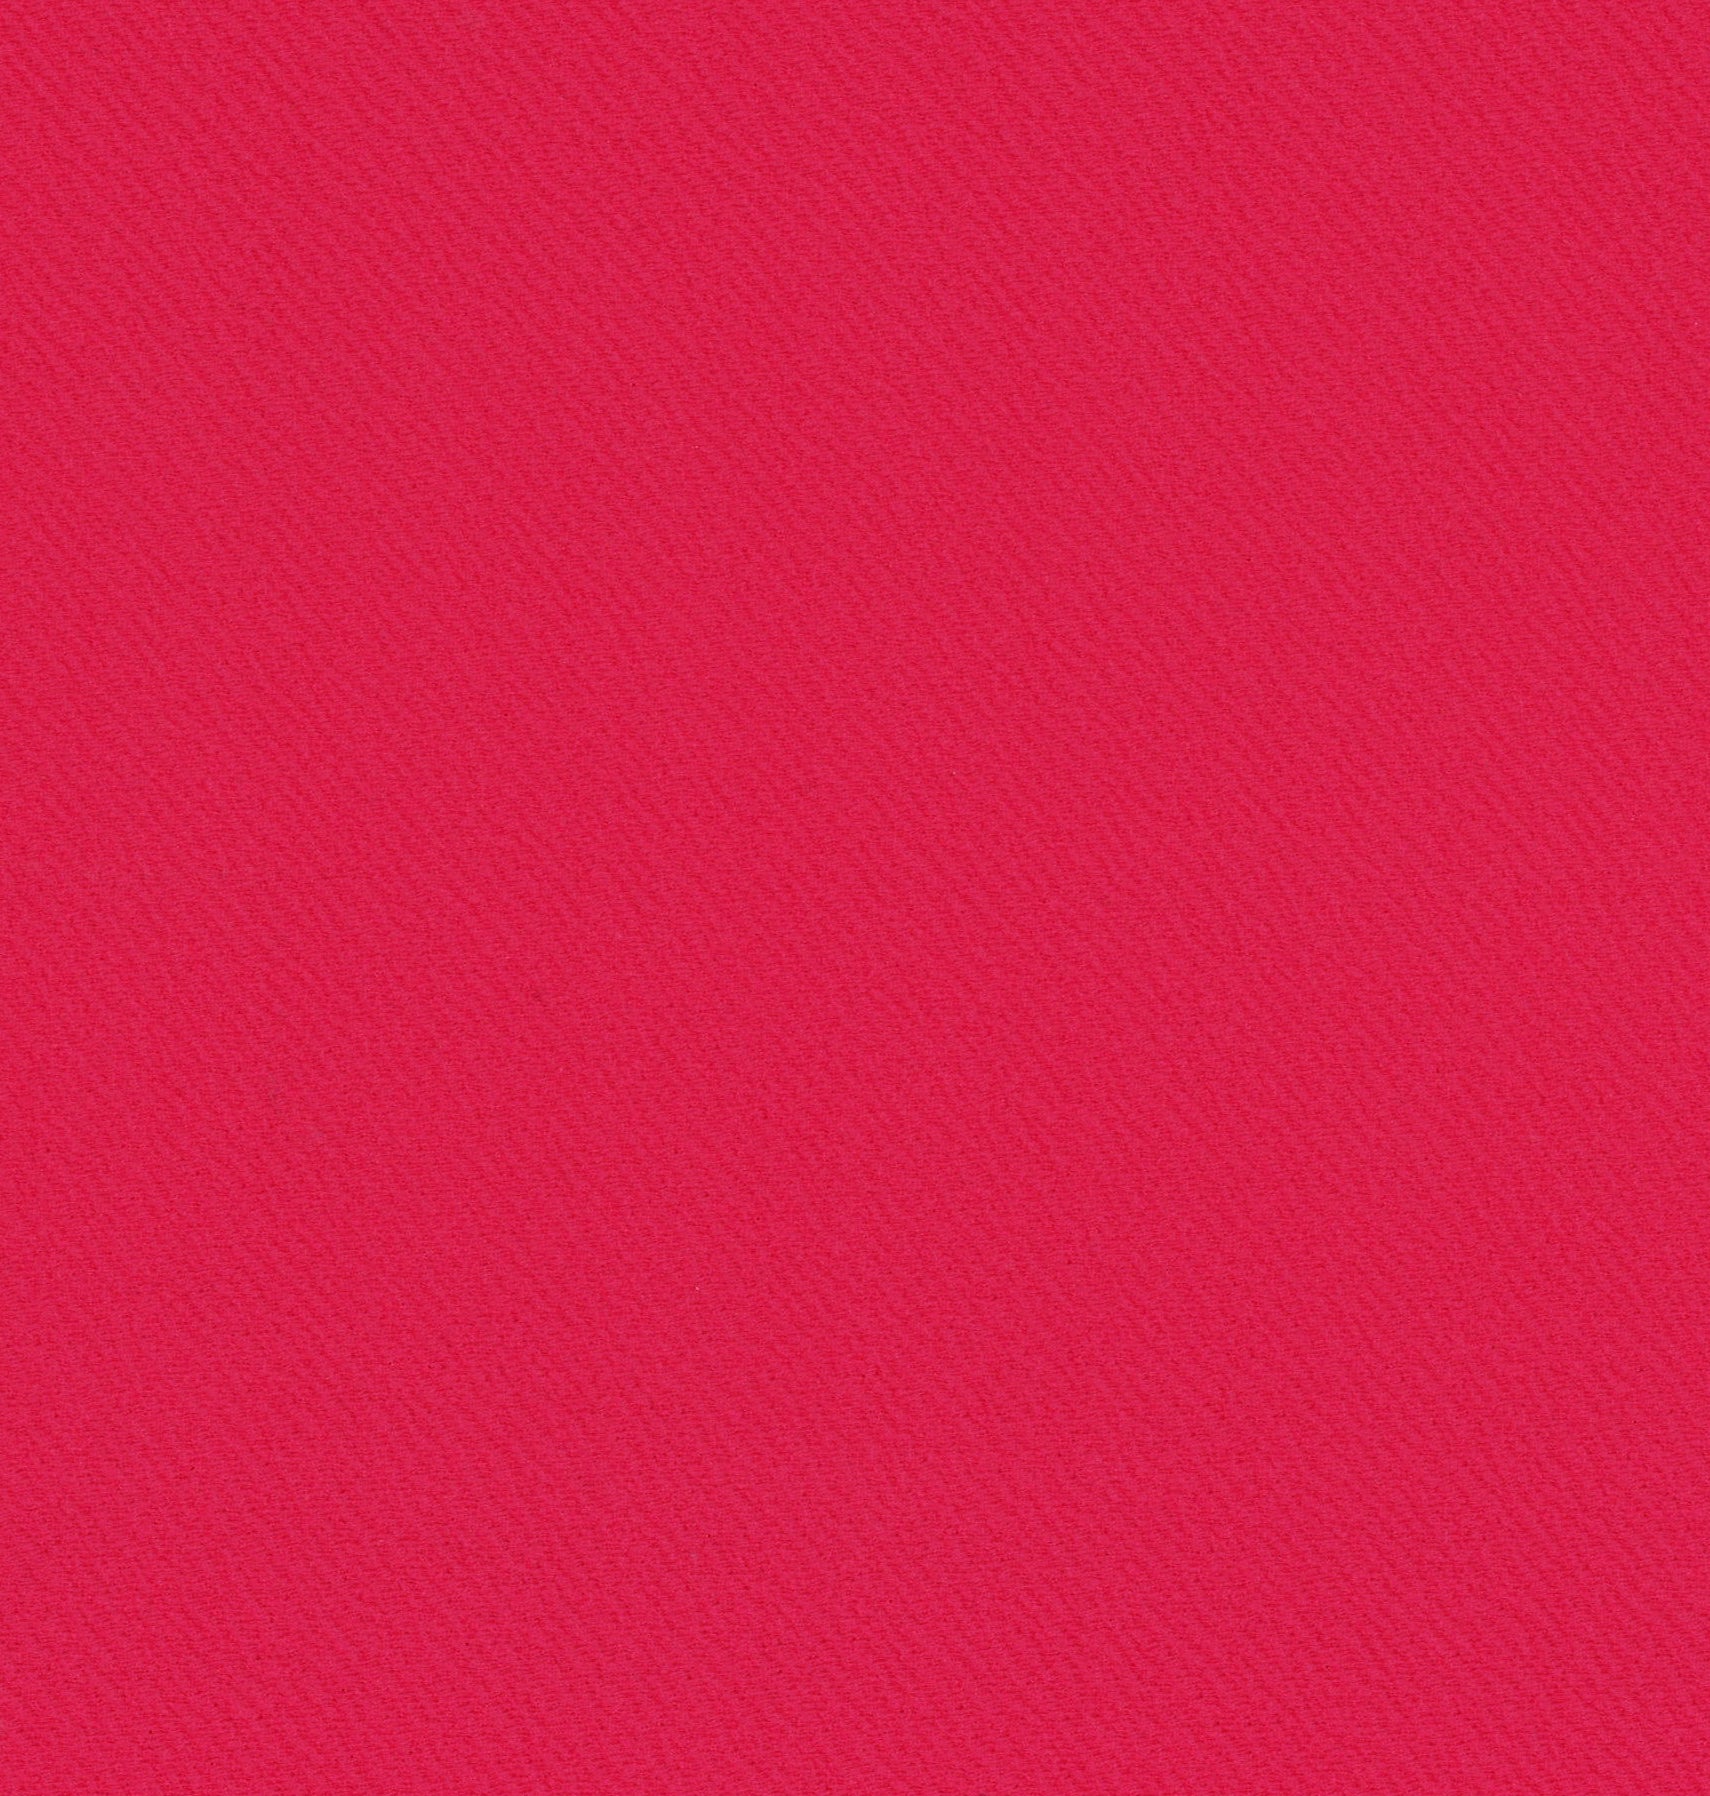 13018-14 桃紅 河流紋 提花 染色混紡布 